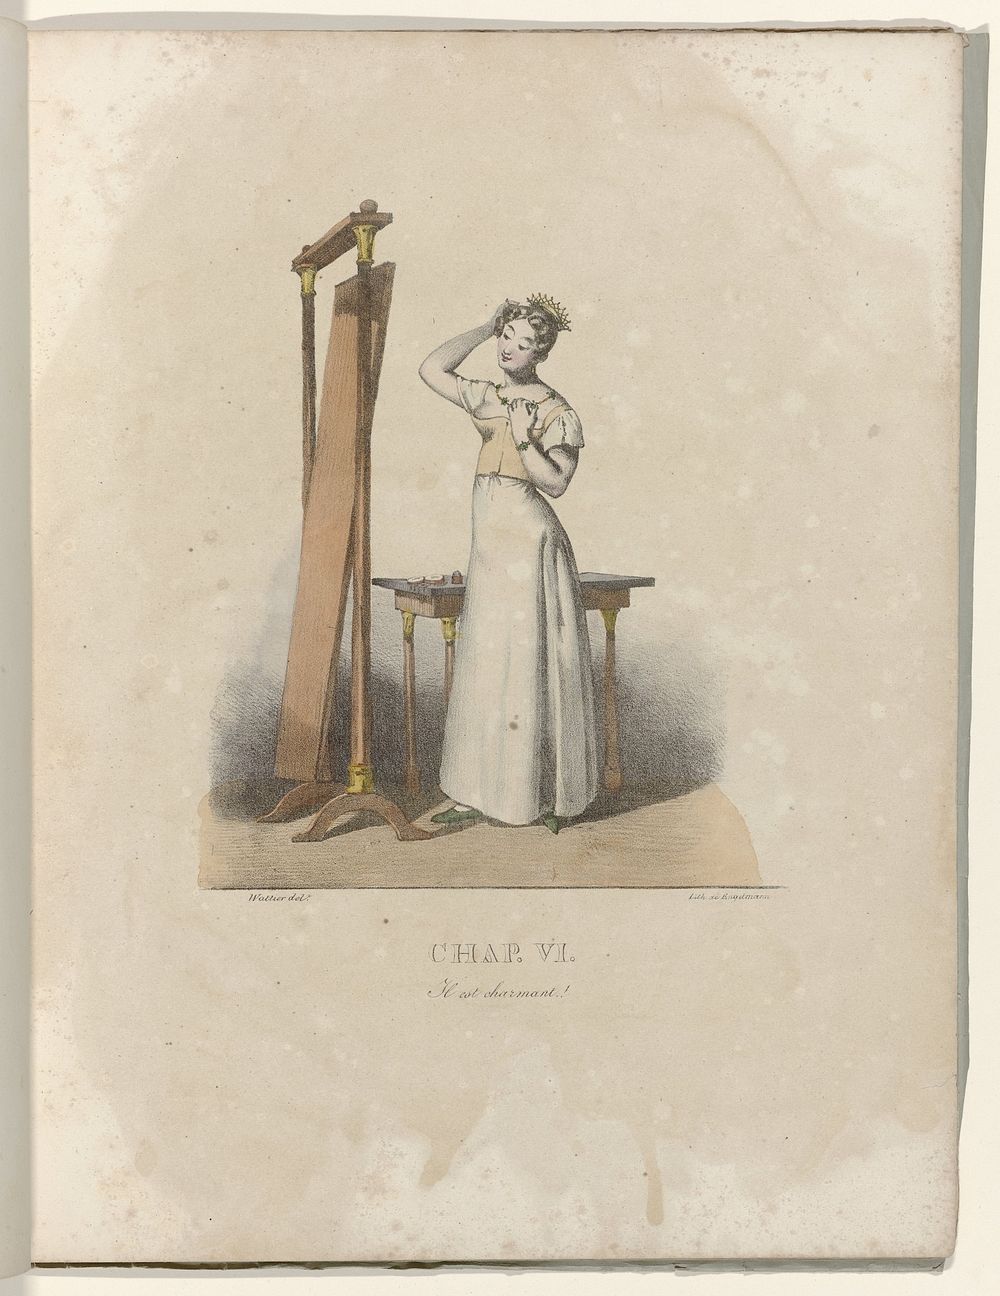 La Né d'une Modiste, 1828 : Chap. VI: Il est charmant (c. 1828) by Gottfried Engelmann and Wattier